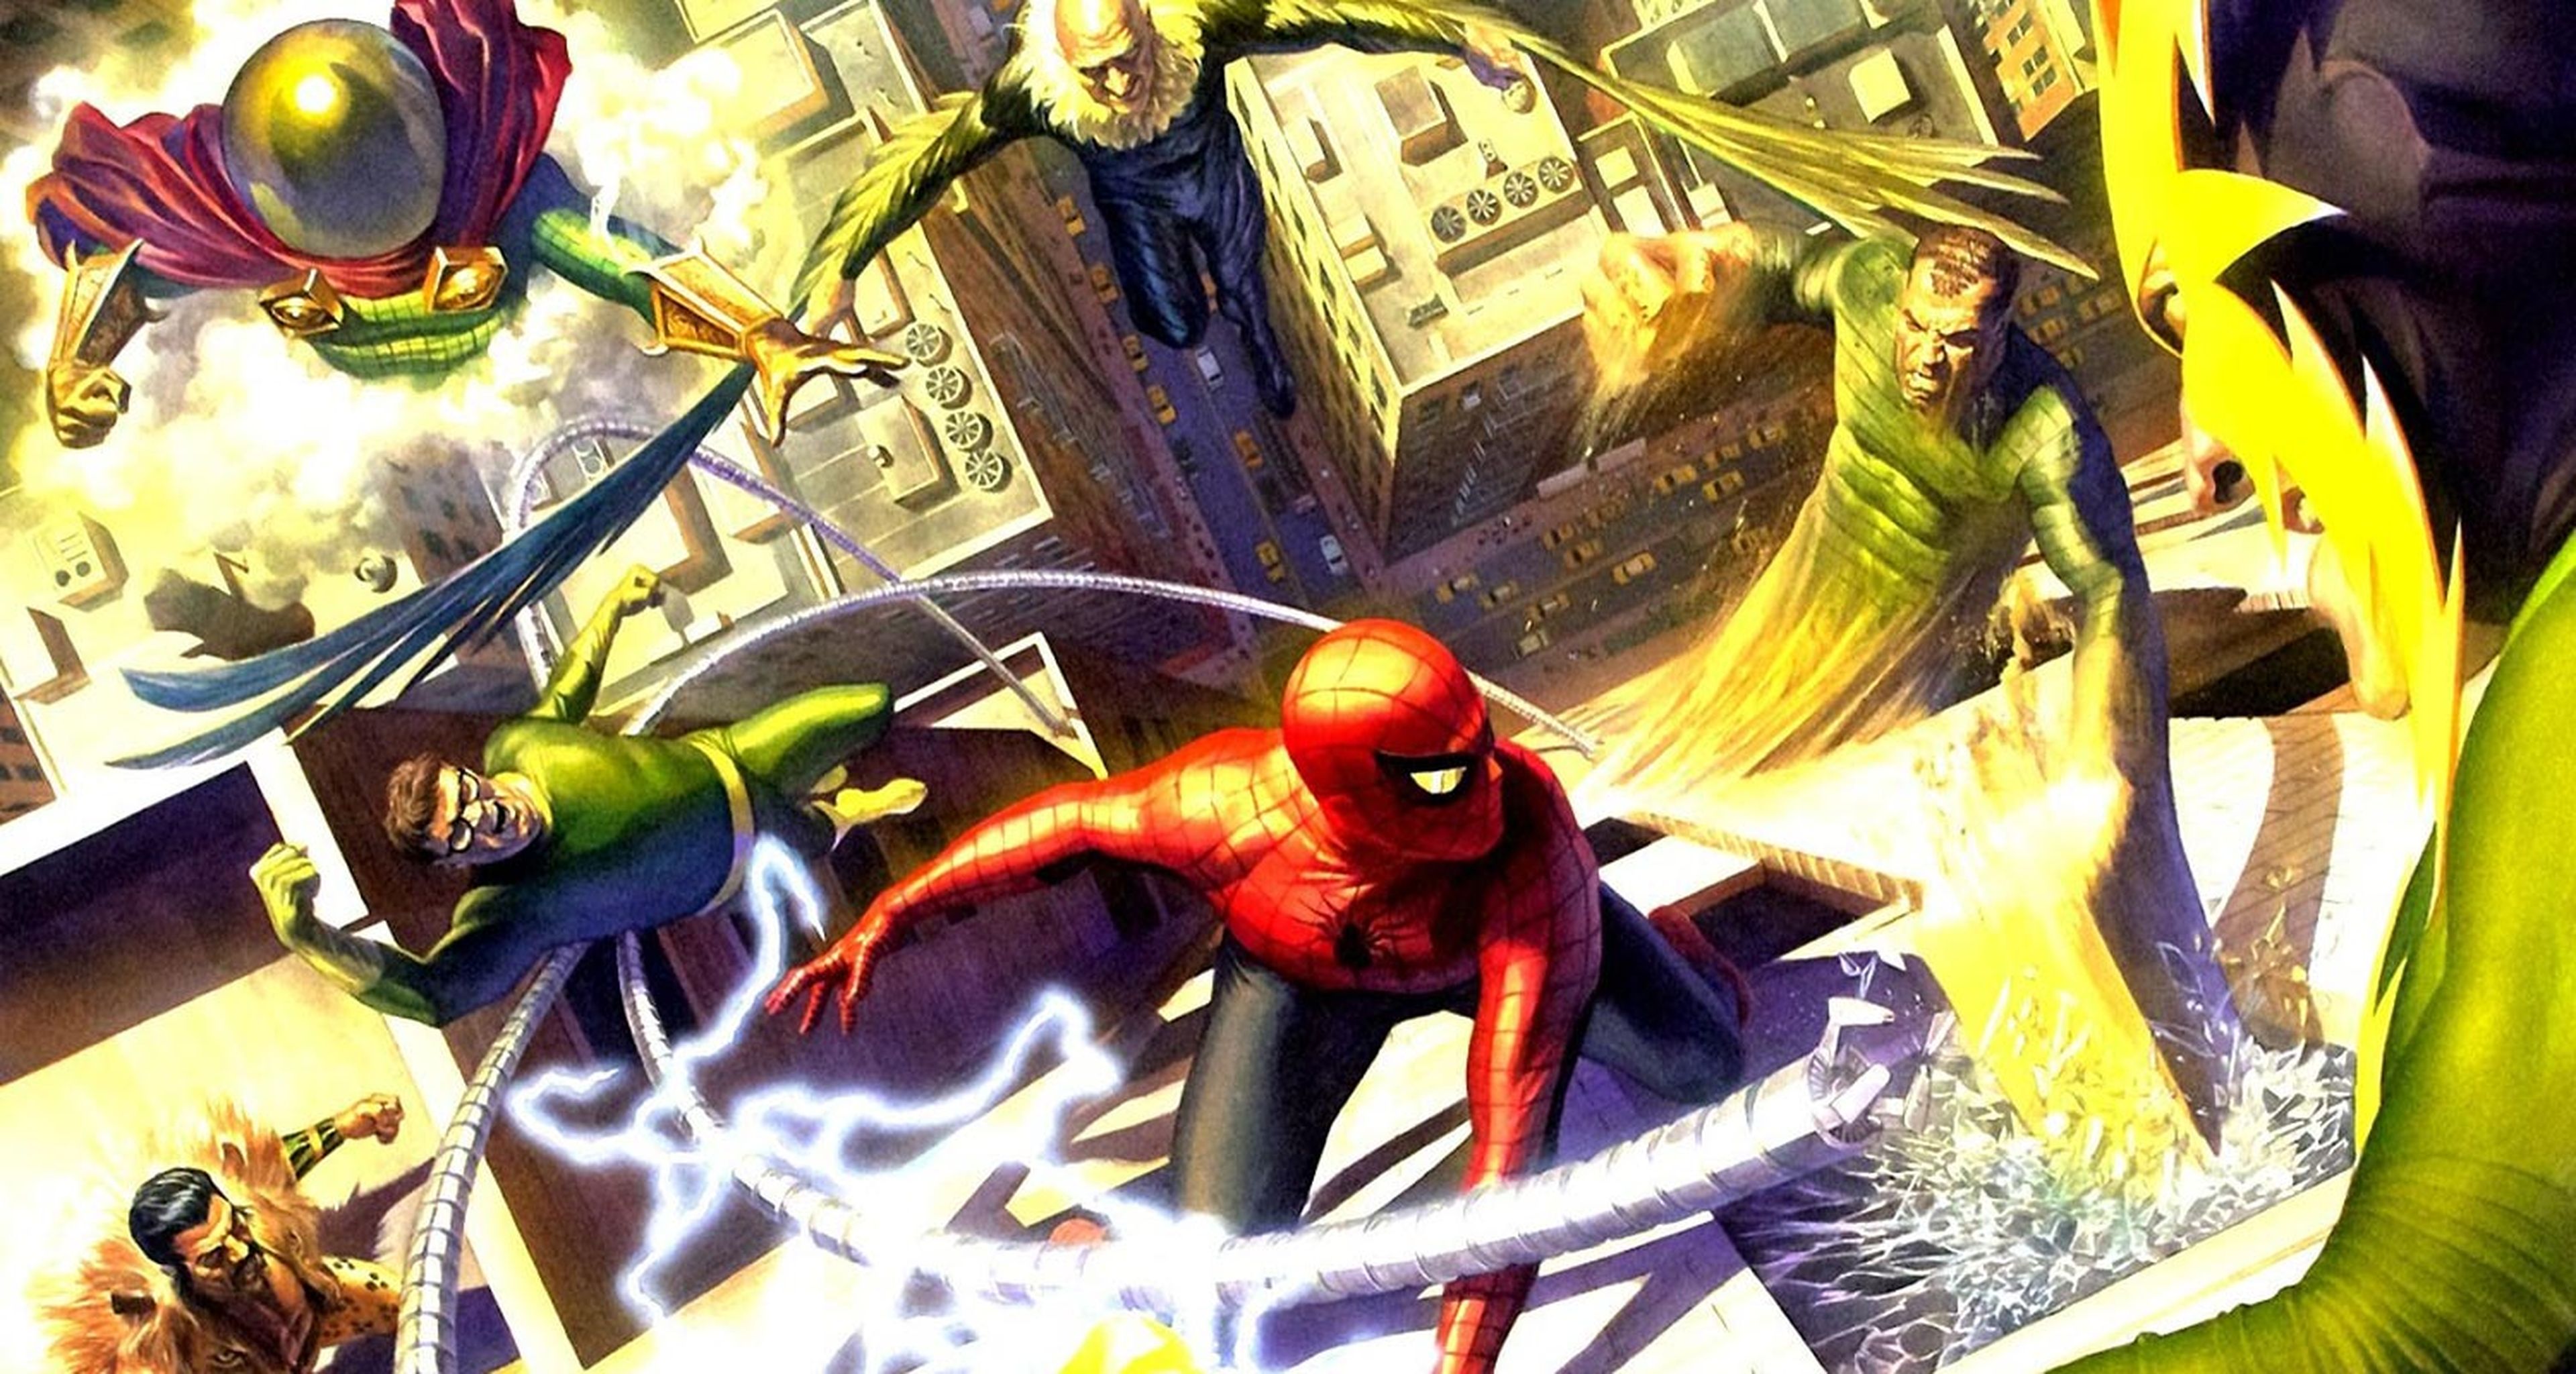 Se rumorea que Spider-Man: No Way Home presentará al Duende Verde de Willem  Dafoe como líder de los Sinister Six